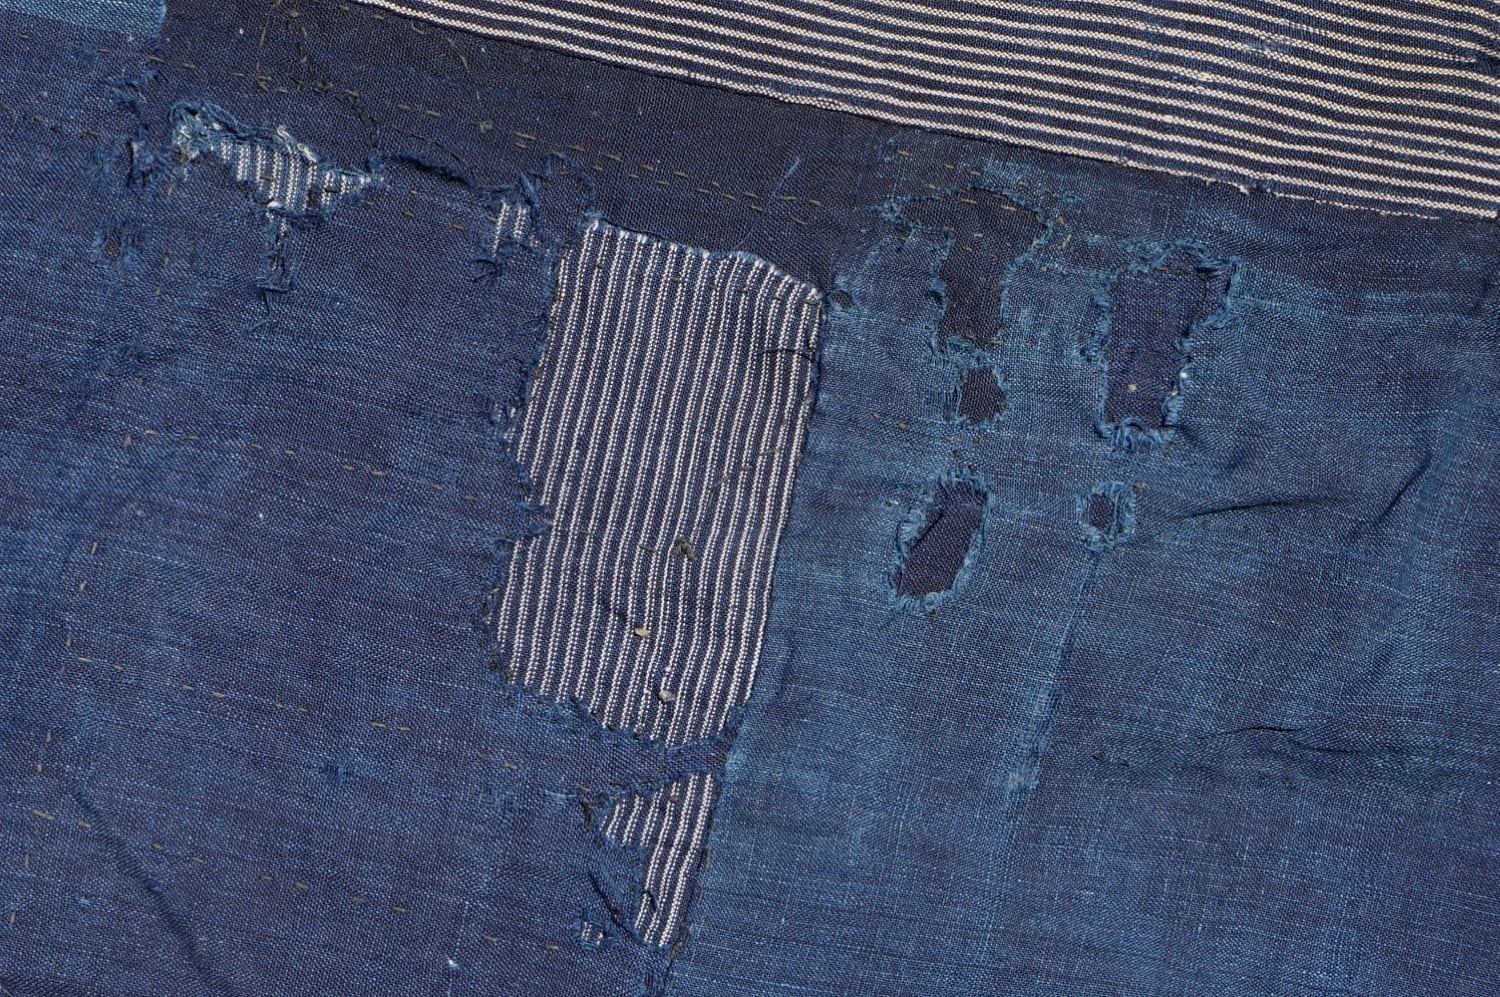 襤褸 ボロ 4幅 藍無地 絣 縞 継ぎ接ぎ 継ぎ当て 藍染木綿古布 リメイク